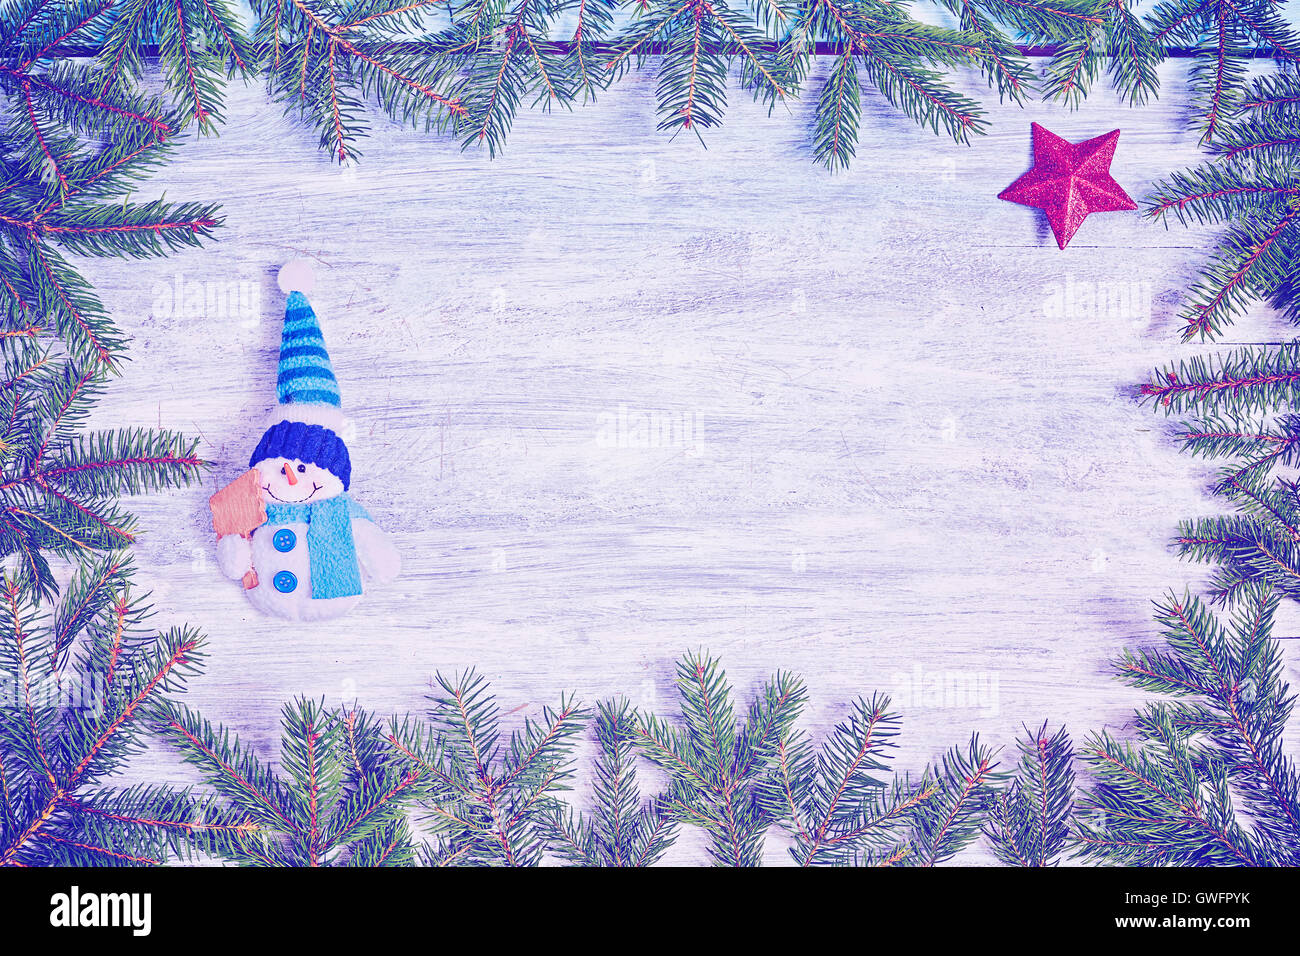 Vintage tonalità dello sfondo di Natale, Abete rami frame con un pupazzo di neve e la stella rossa su una tavola in legno rustico, vista dall'alto con co Foto Stock